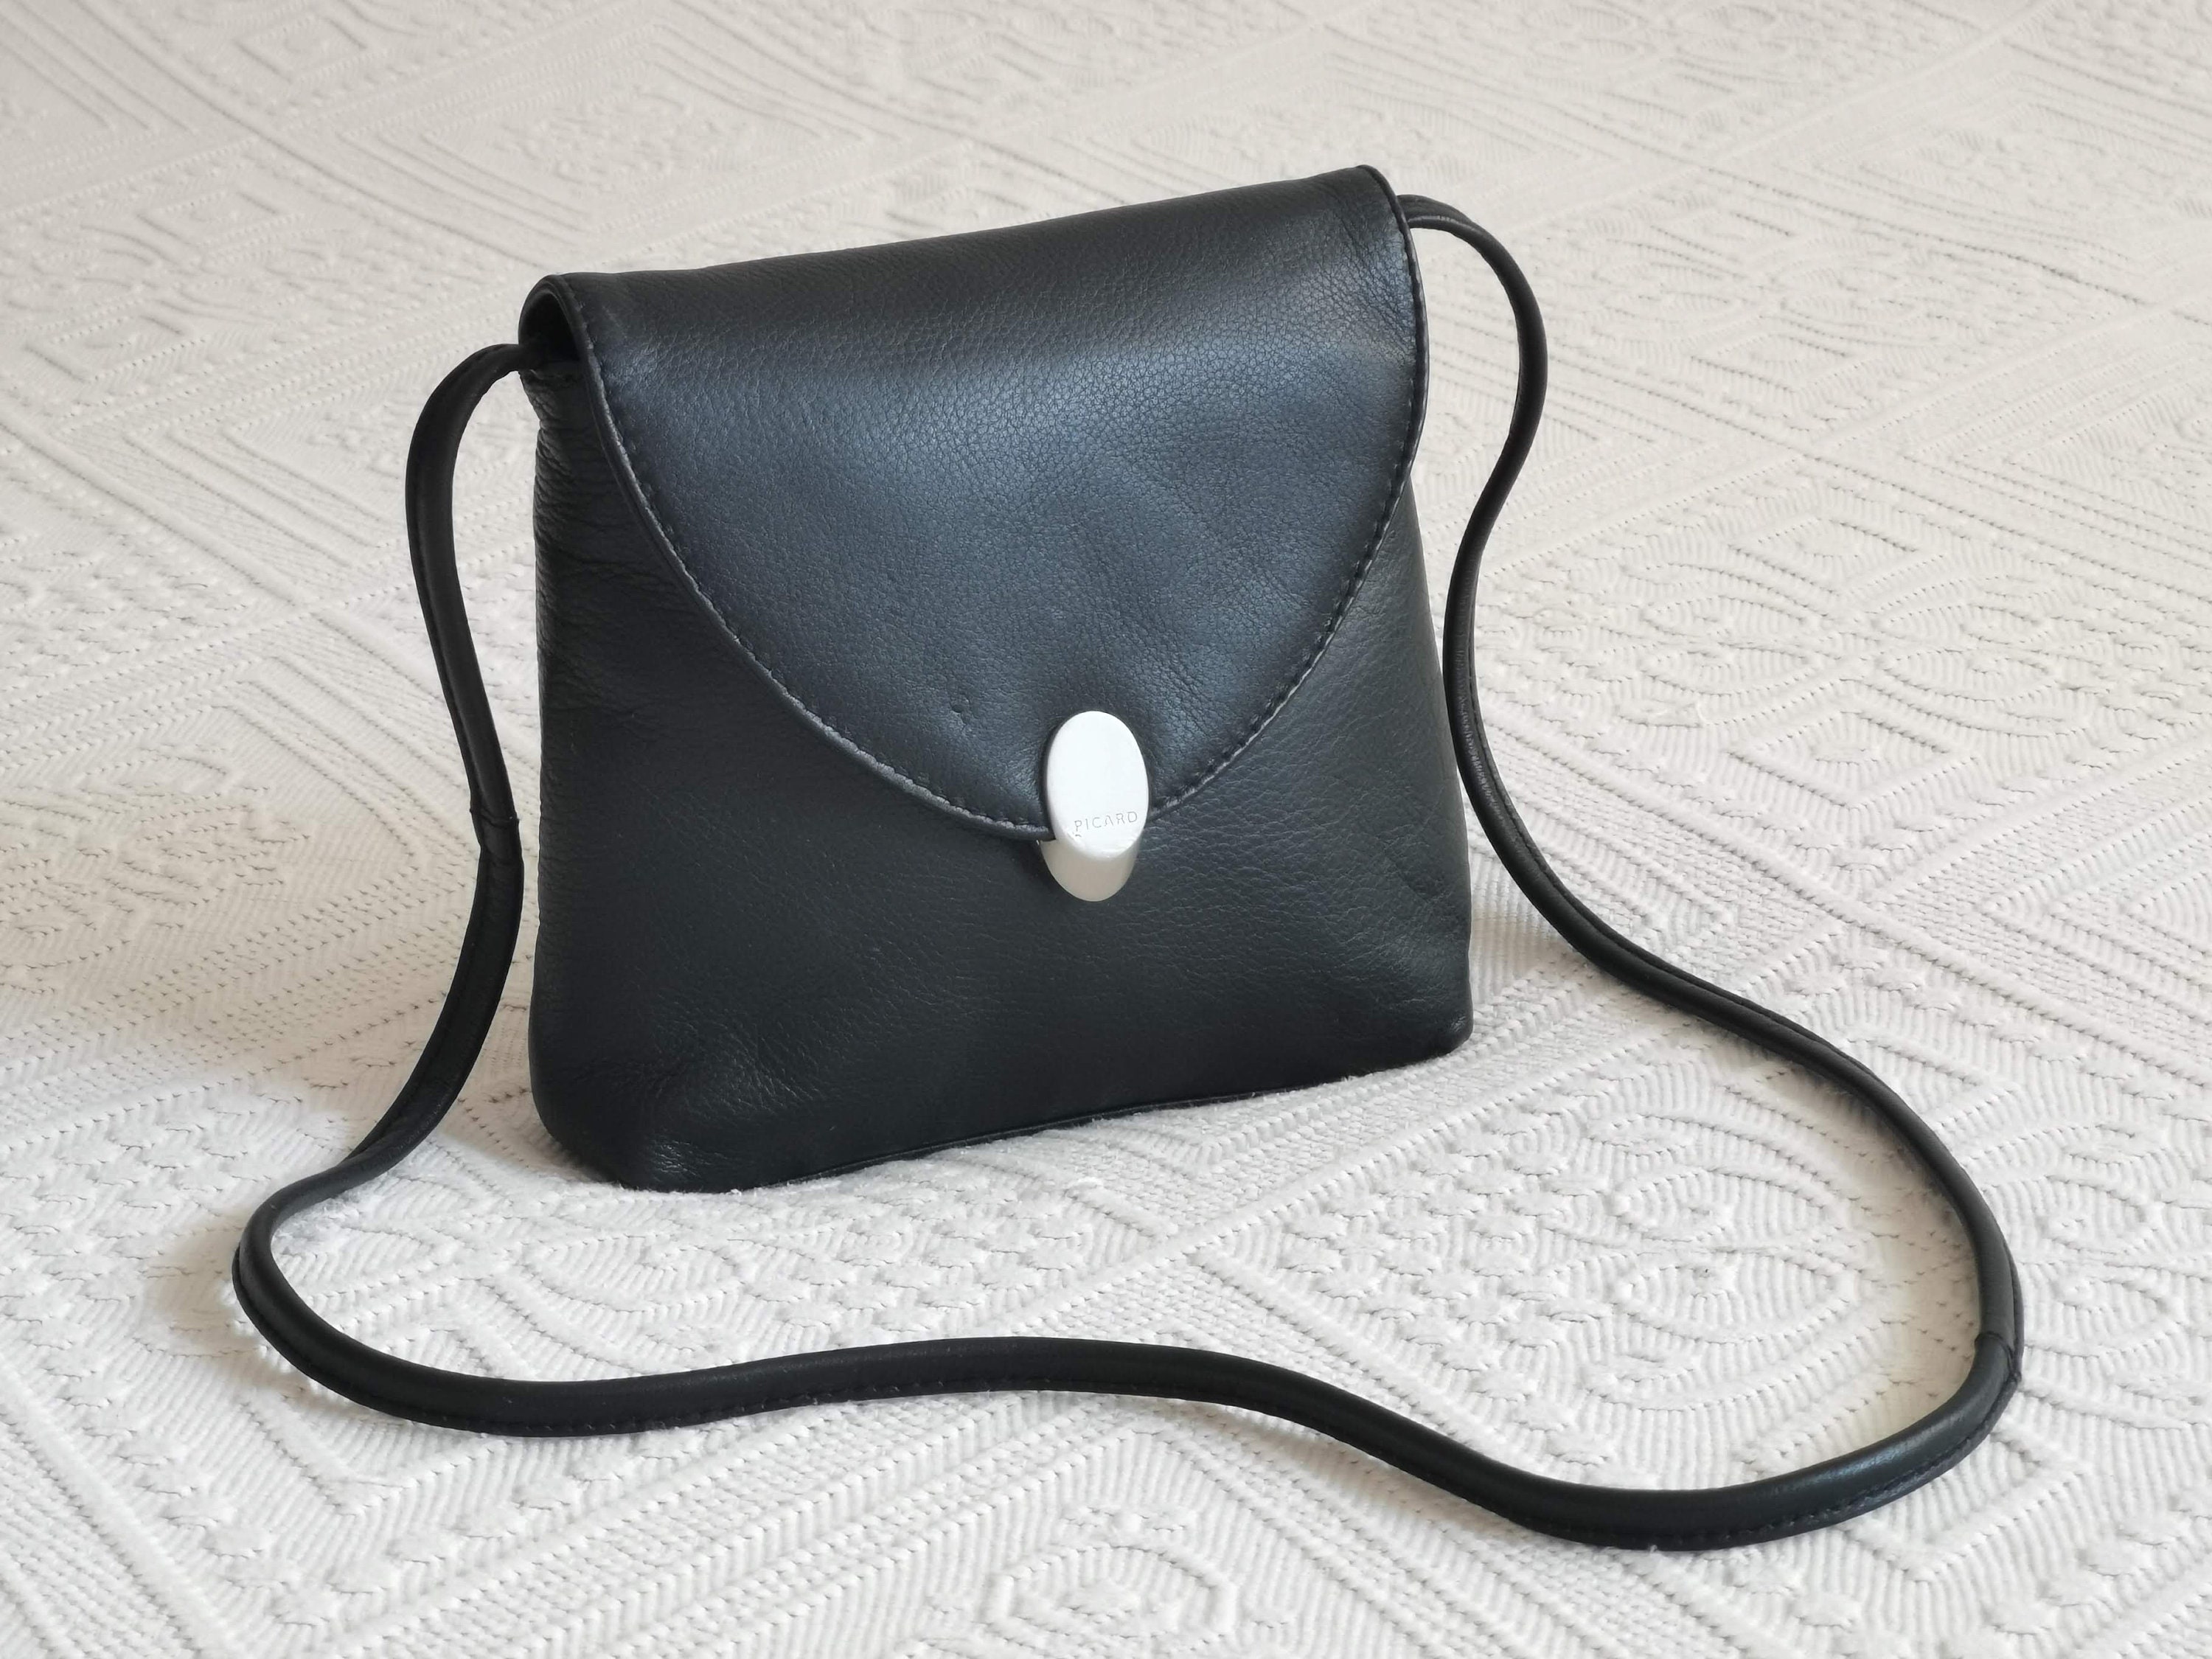 Picard Women's Shoulder Bag Black Shopper Bag Gift for 